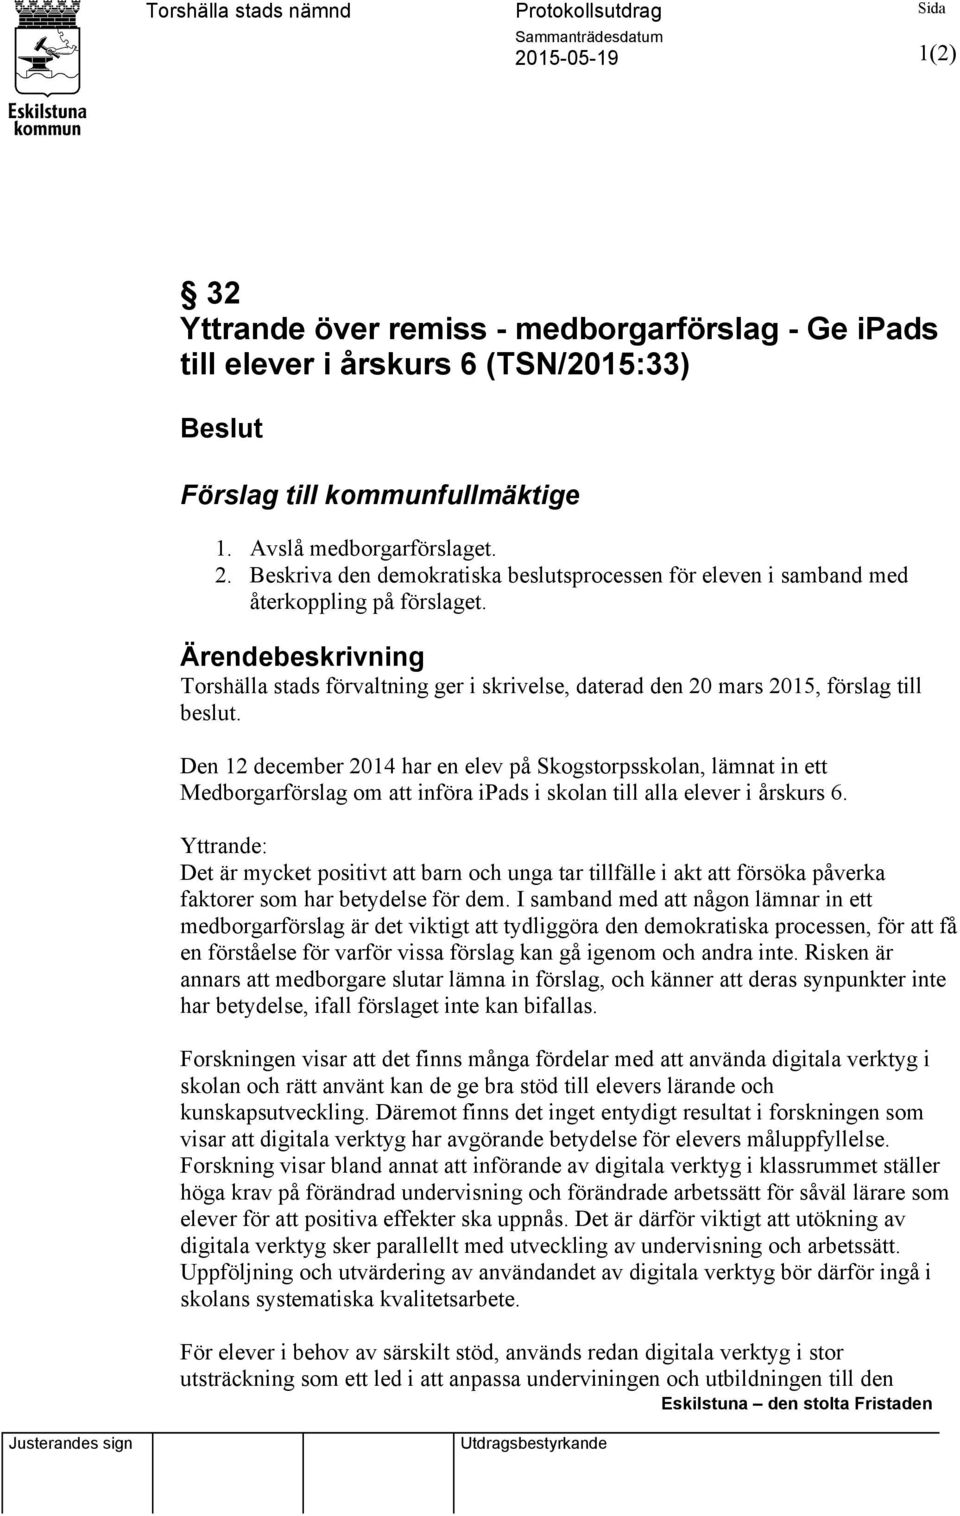 Ärendebeskrivning Torshälla stads förvaltning ger i skrivelse, daterad den 20 mars 2015, förslag till beslut.